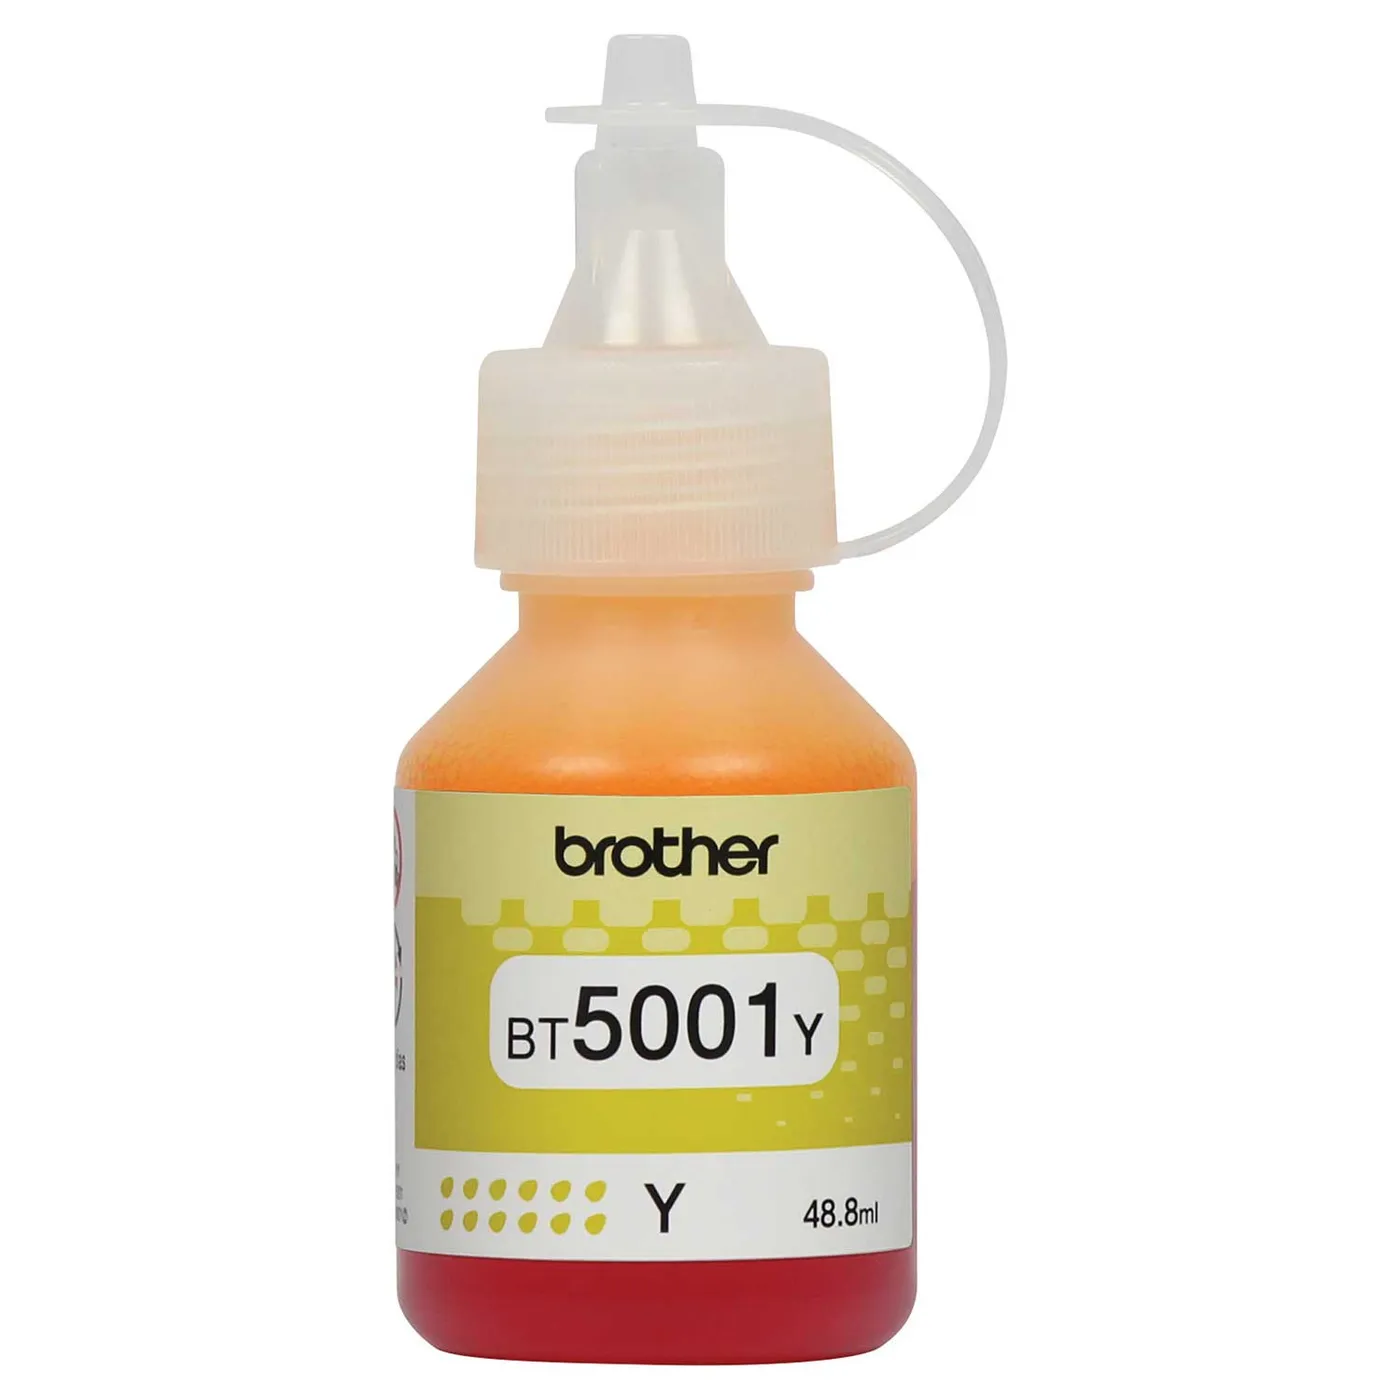 Botella de Tinta BROTHER BT5001Y Amarillo